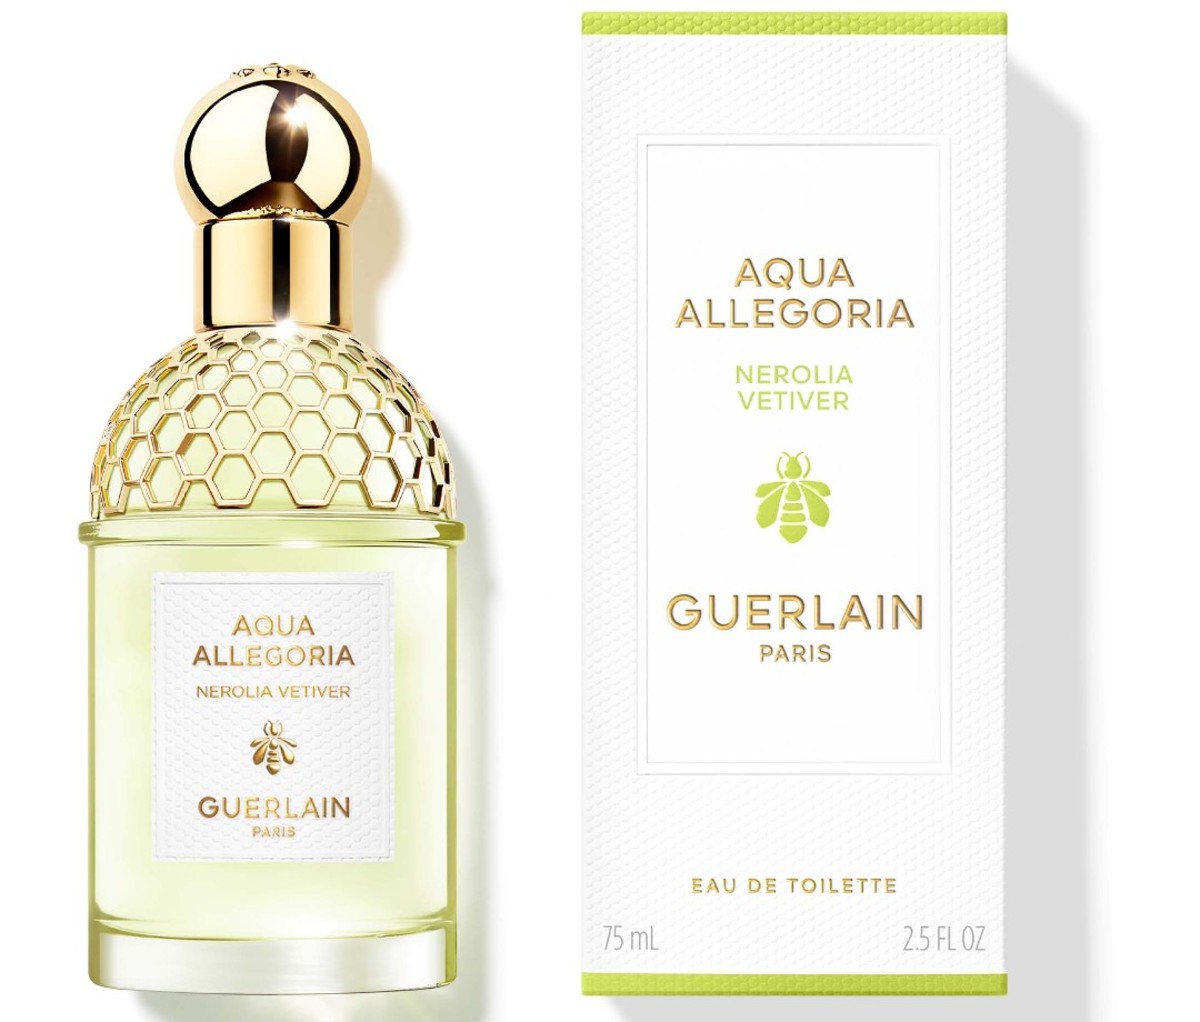 Bottle of Guerlain Aqua Allegoria Nerolia Vetiver EDT